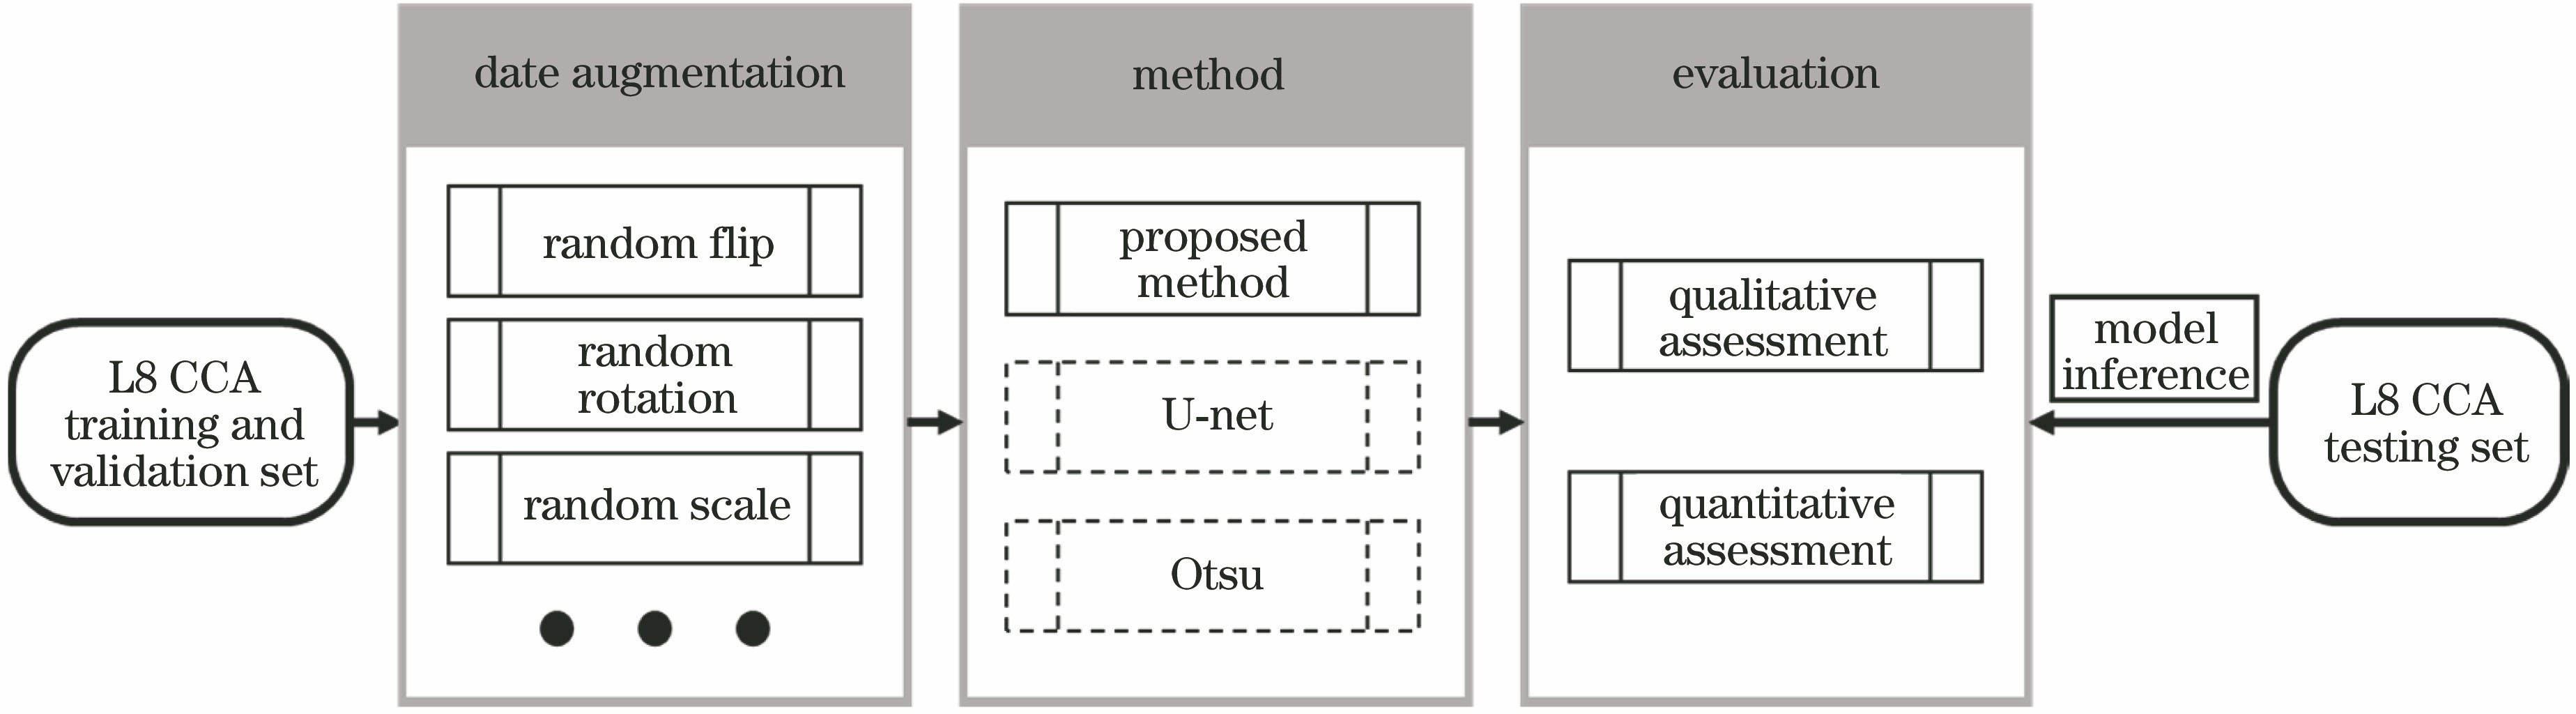 Block diagram of proposed method